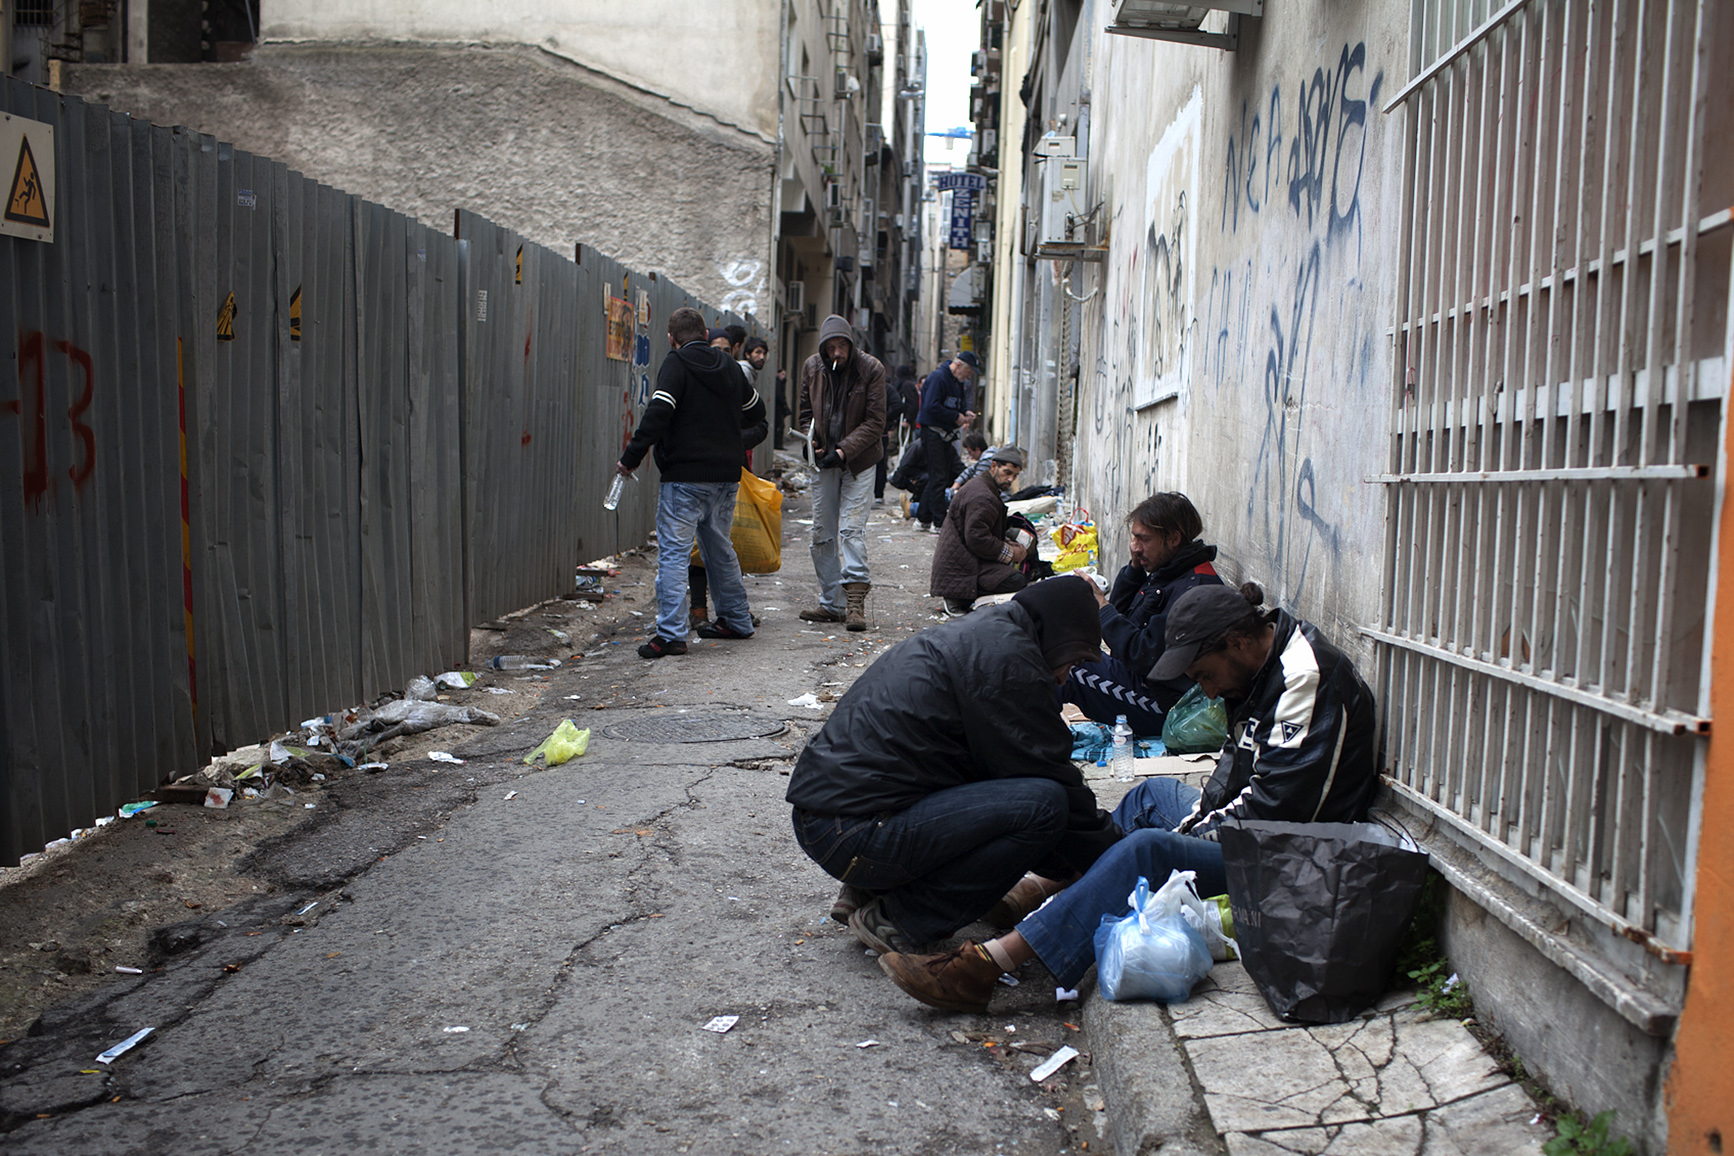 Αύξηση των συνθετικών ναρκωτικών στην Ελλάδα λόγω οικονομικής κρίσης